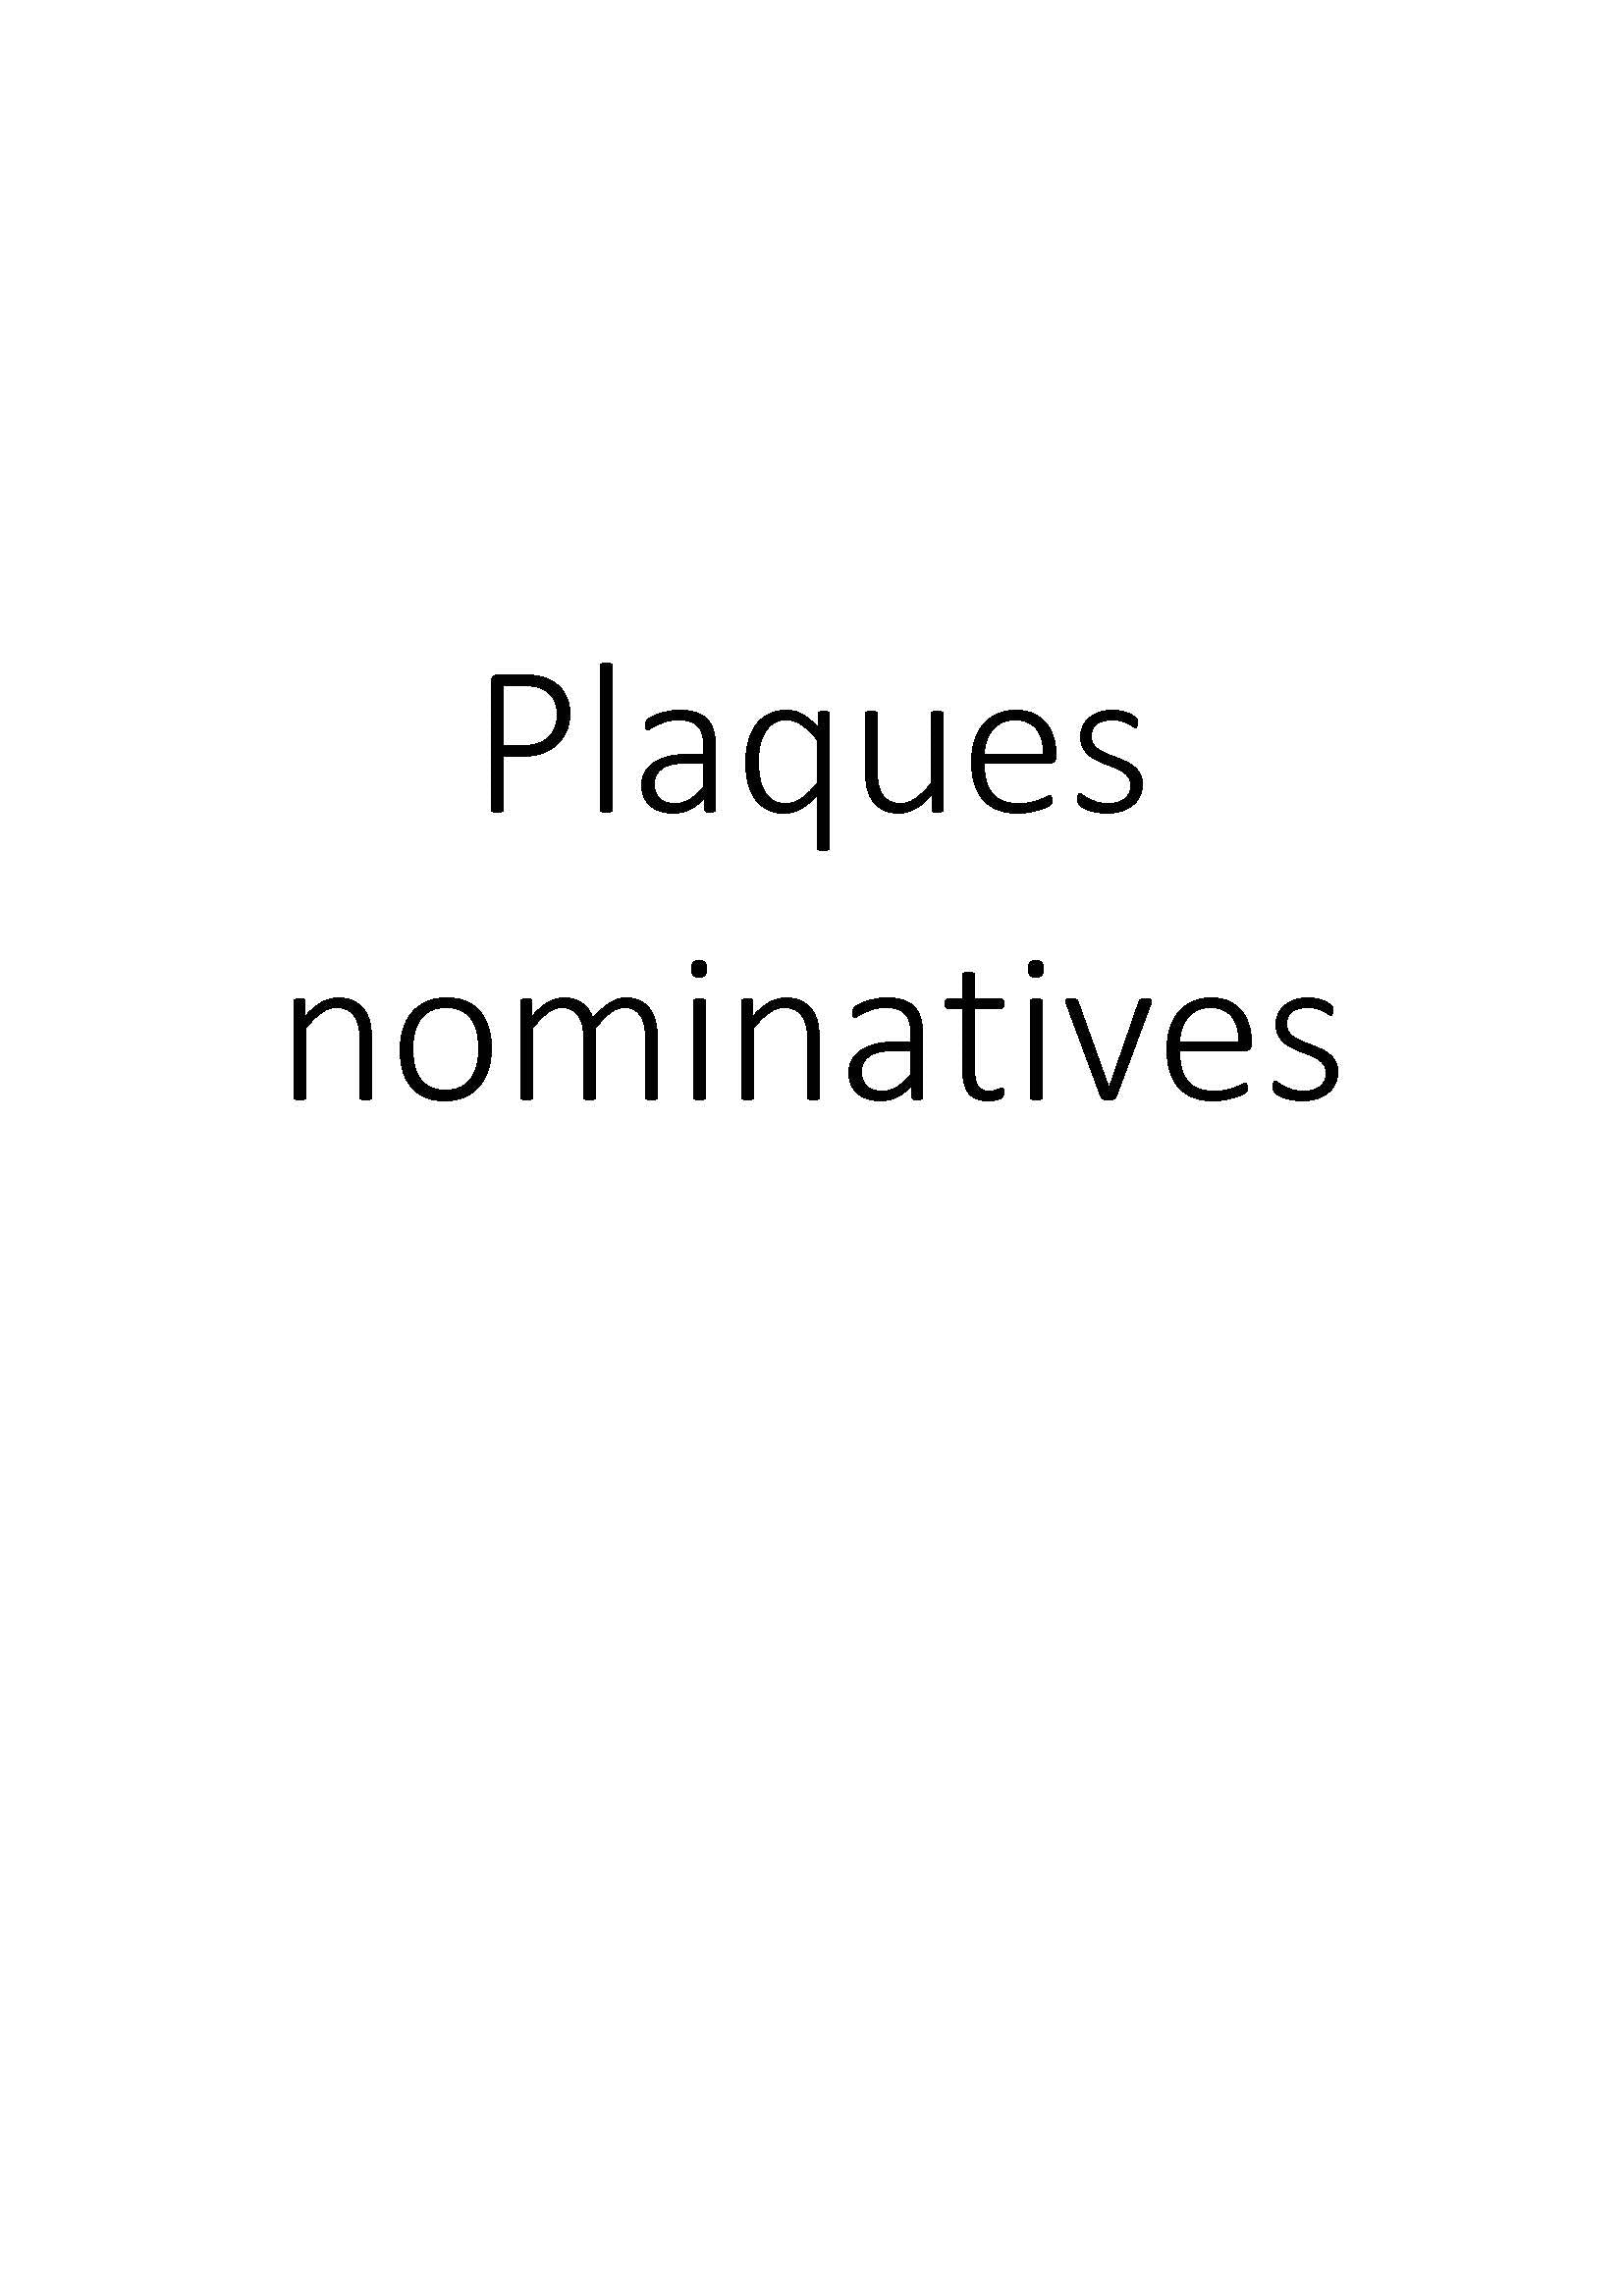 Plaques nominatives clicktofournisseur.com